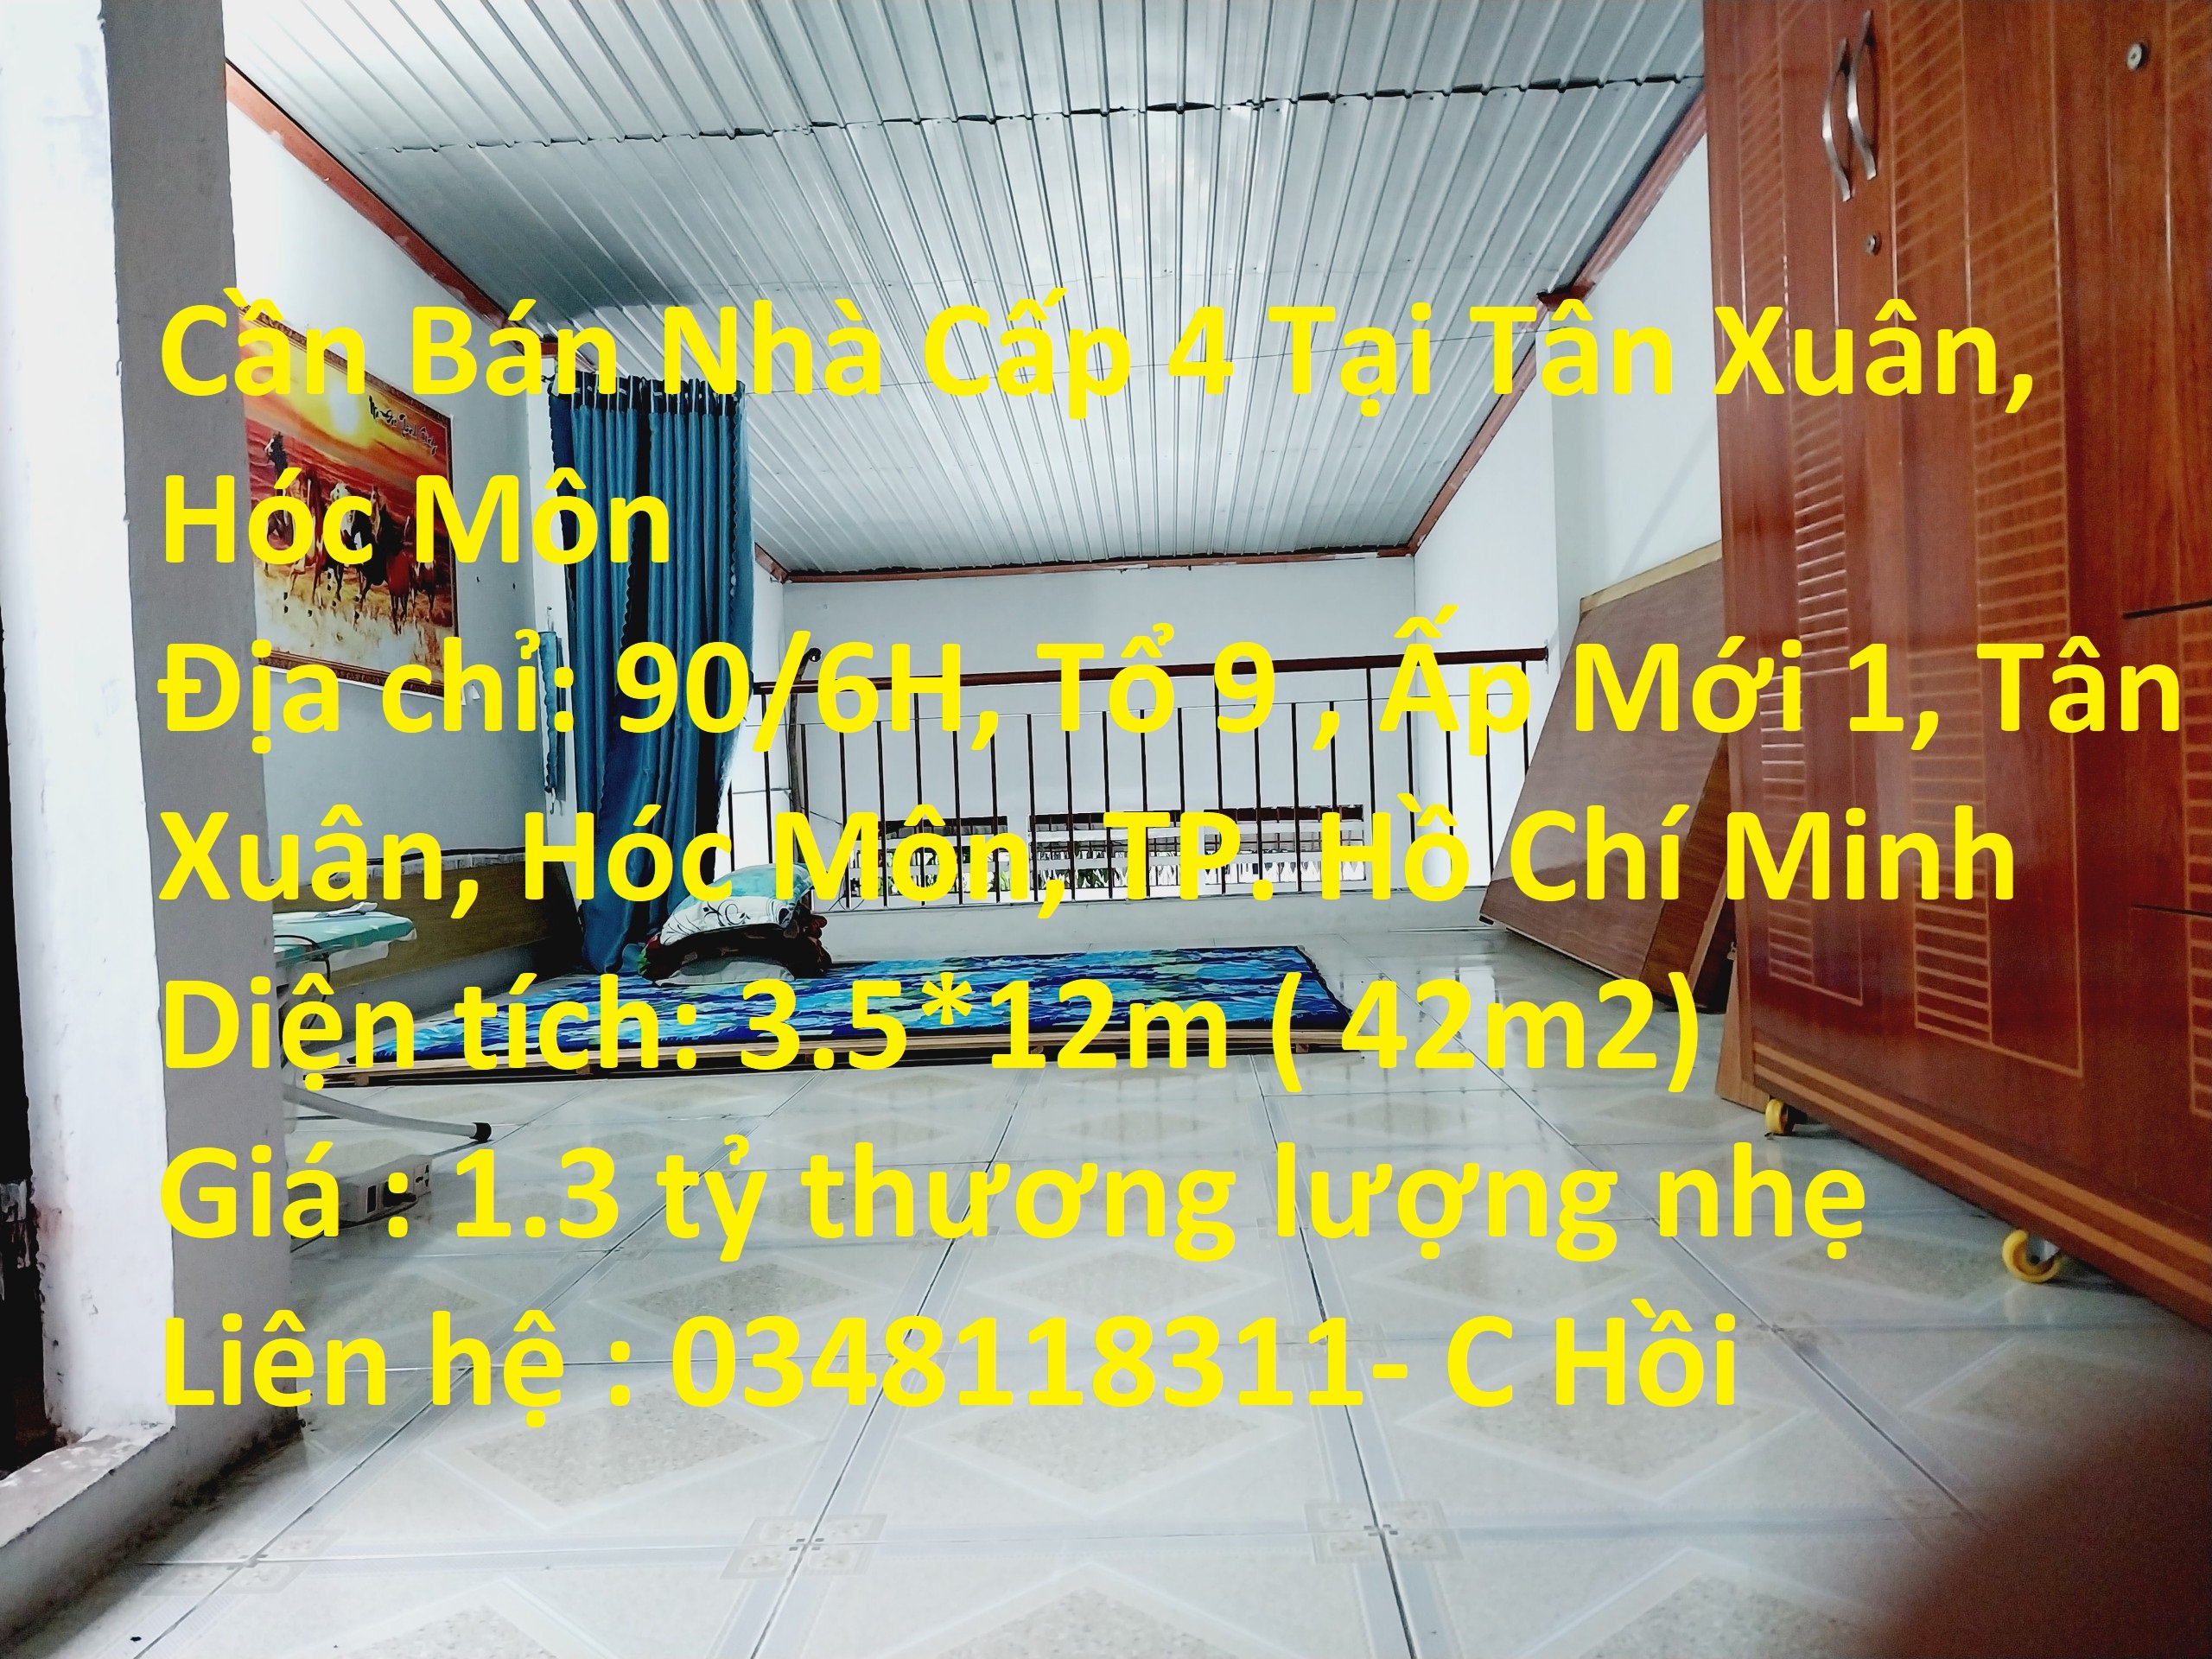 Cần Bán Nhà Cấp 4 Tại Tân Xuân, Tân Xuân, Hóc Môn, TP. Hồ Chí Minh